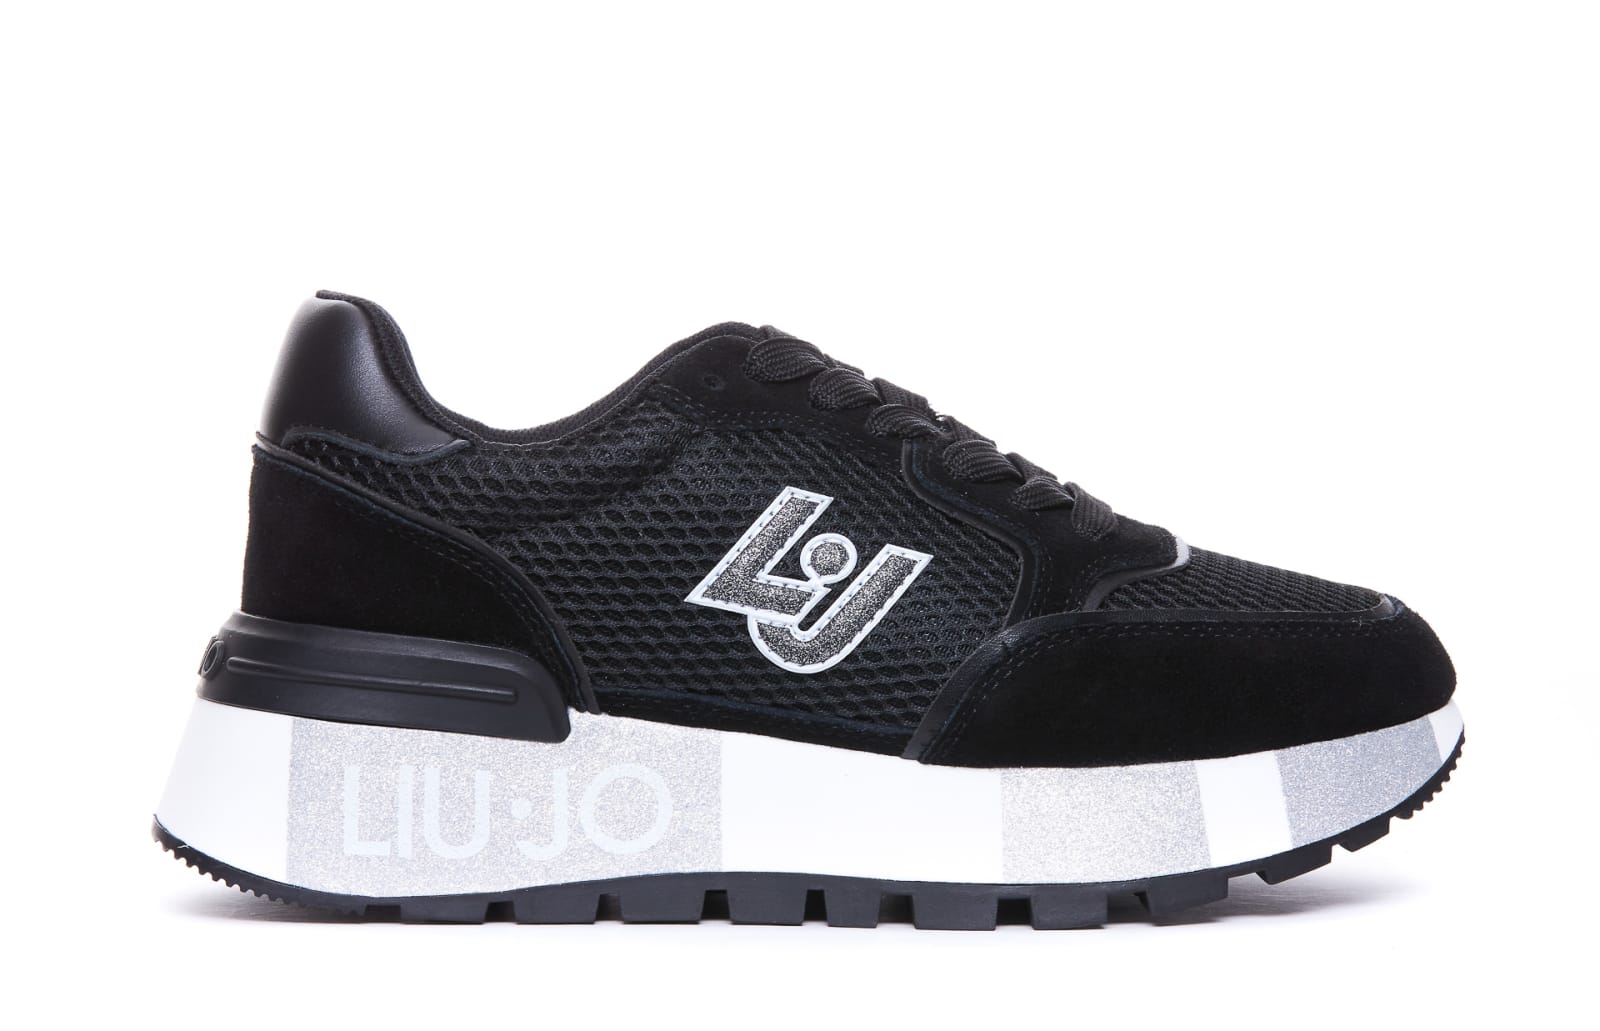 Shop Liu •jo Amazing Sneakers In Black